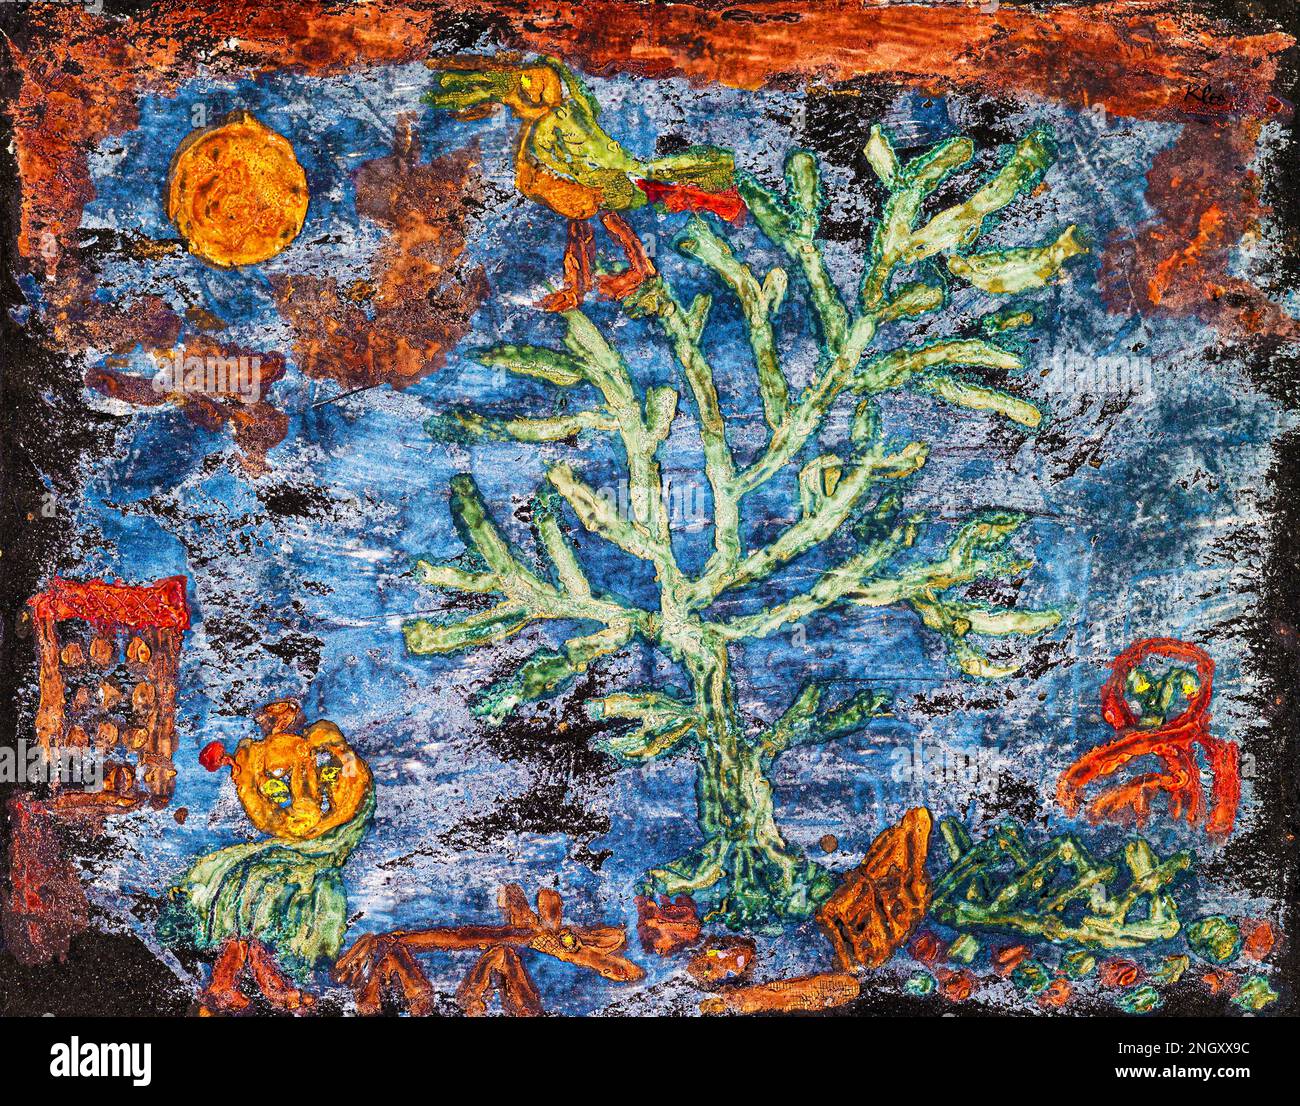 Cuentos De Hadas Del Norte Pintura En Alta Resoluci N Por Paul Klee Original Del